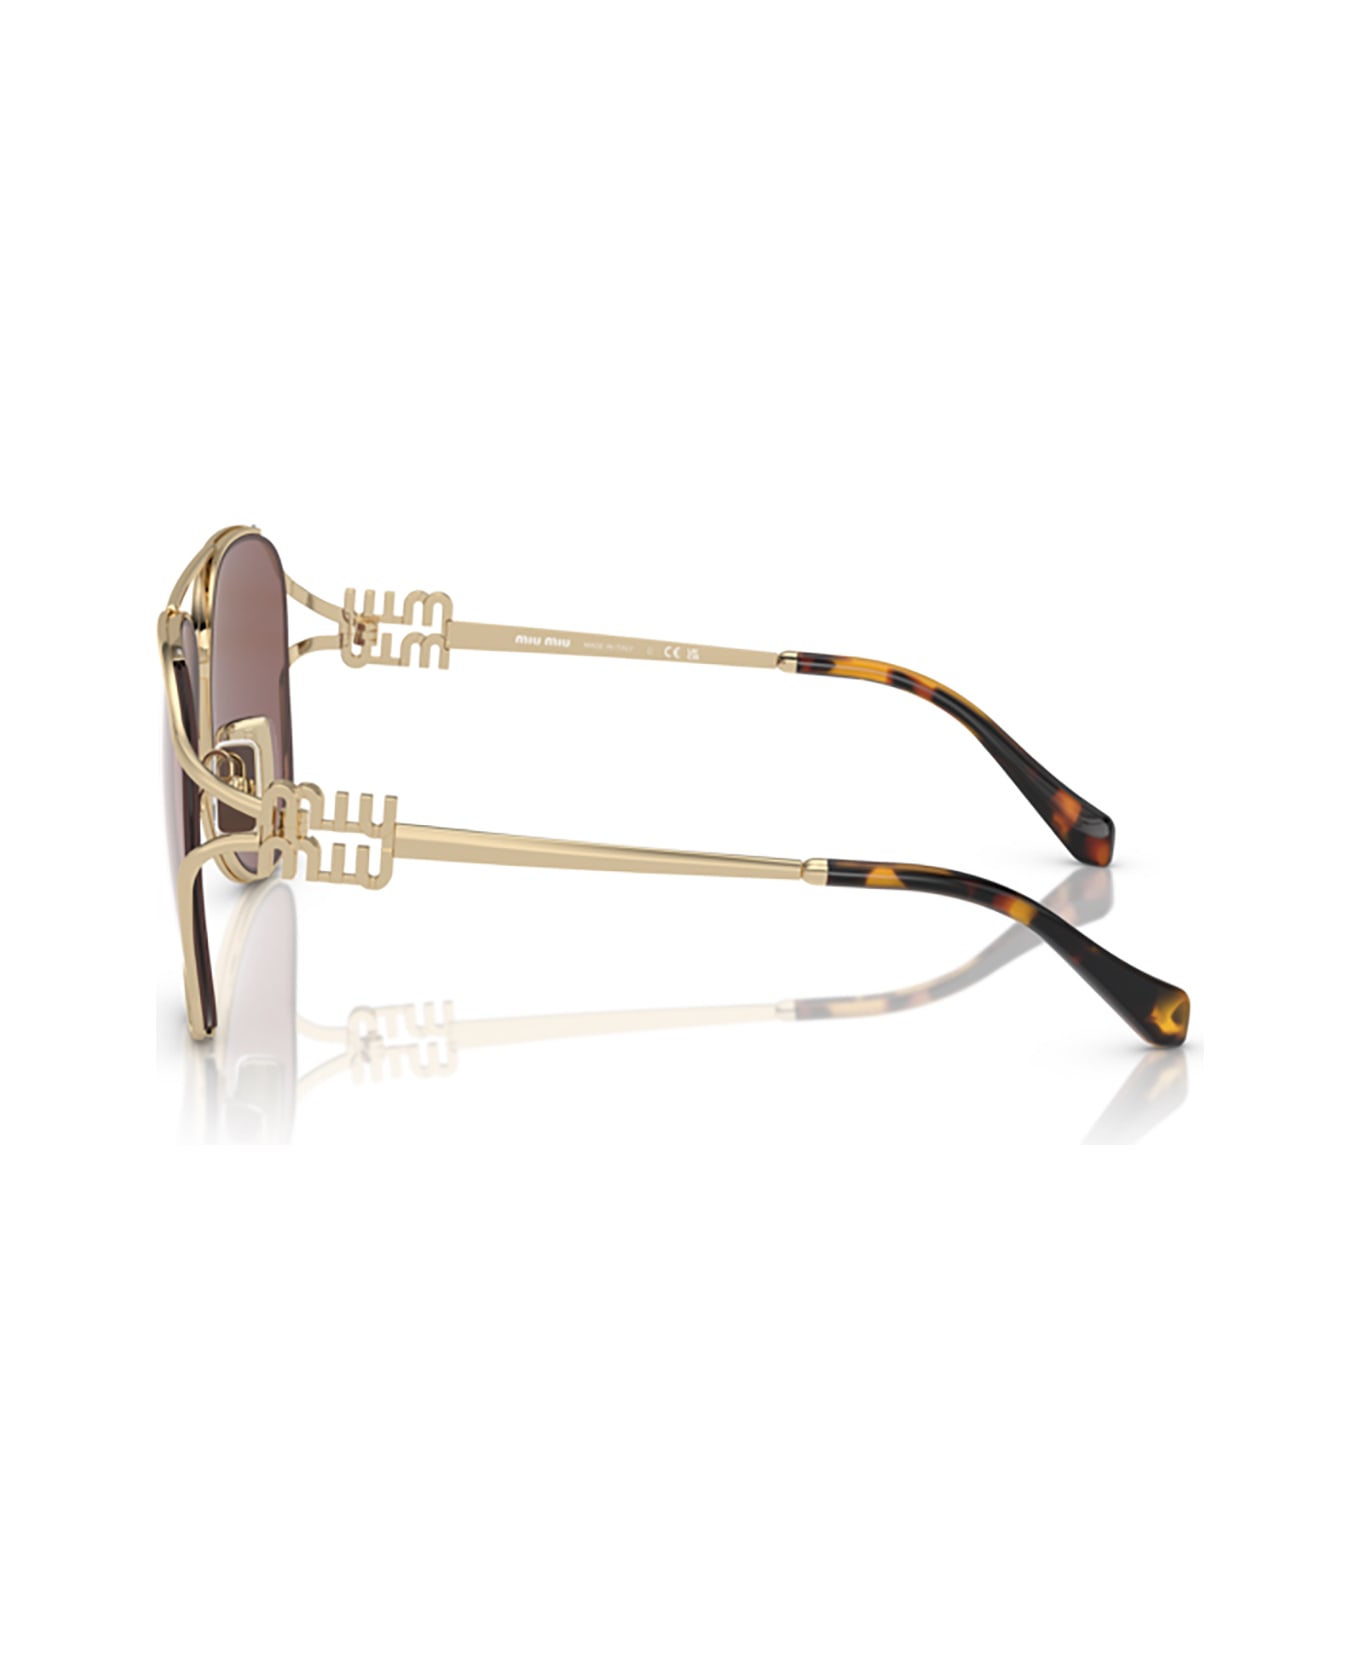 Miu Miu Eyewear Mu 52zs Pale Gold Sunglasses - Pale Gold